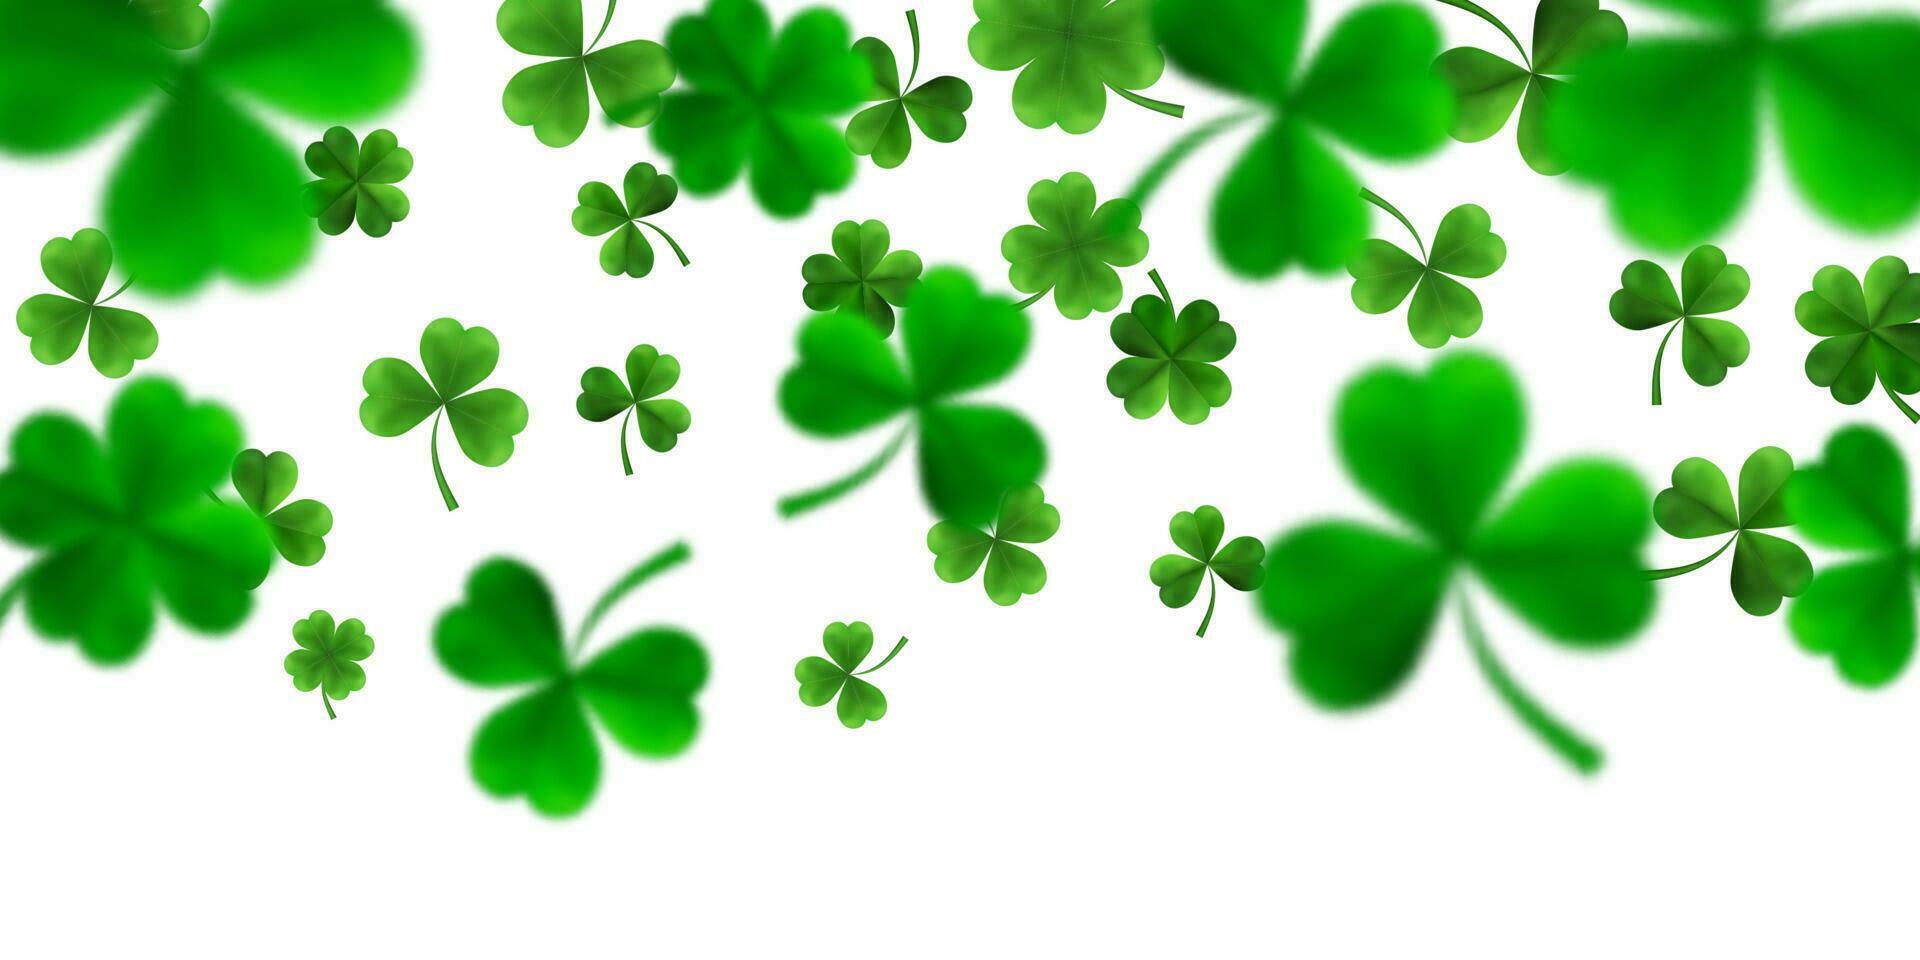 santo patrick's dia fronteira com verde quatro e árvore 3d folha trevos em branco fundo. irlandês por sorte e sucesso símbolos. vetor ilustração